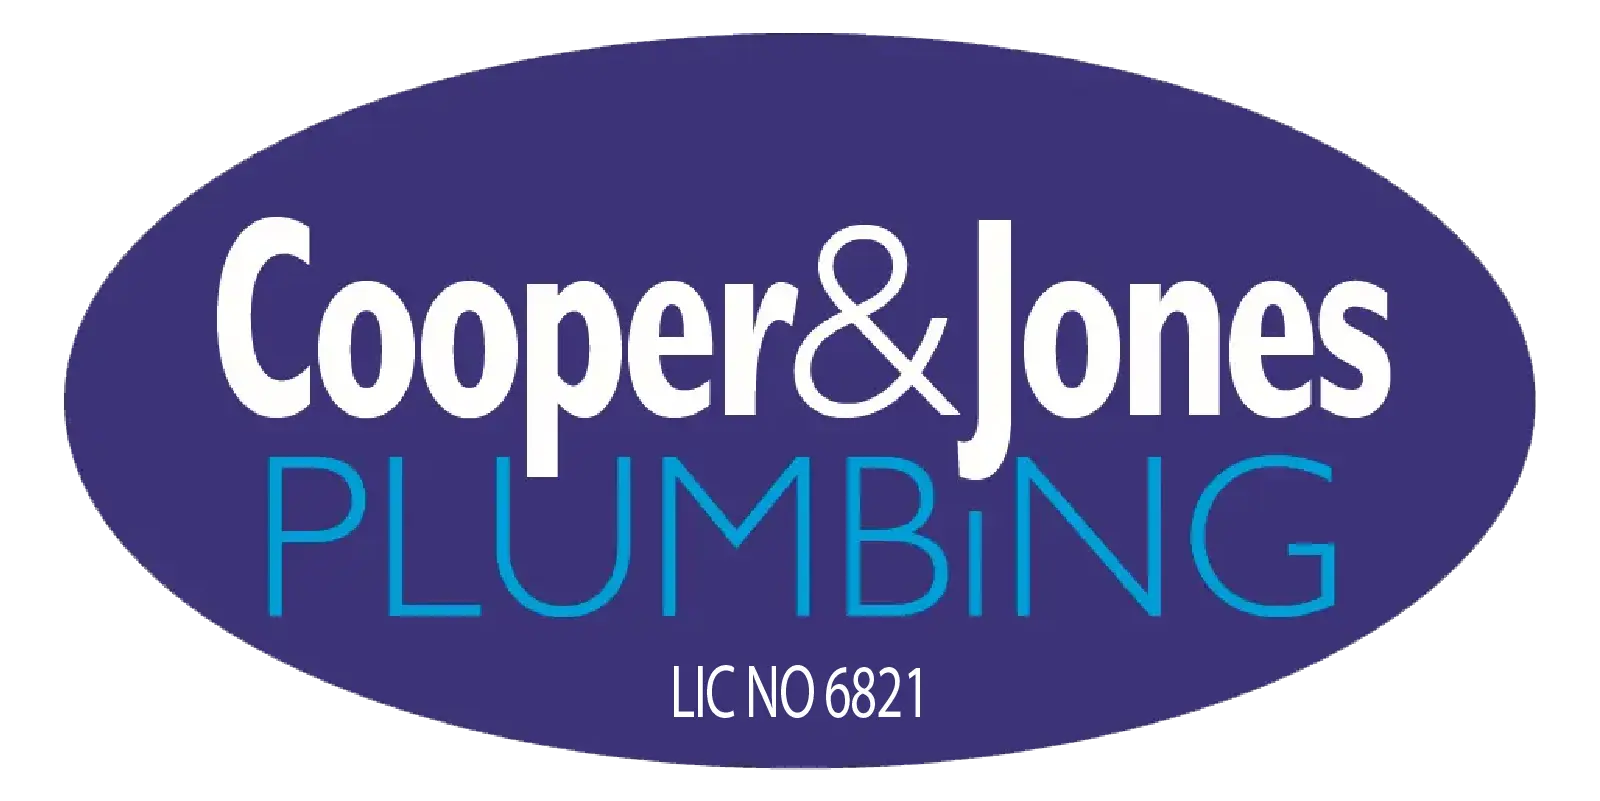 Cooper & Jones Plumbing